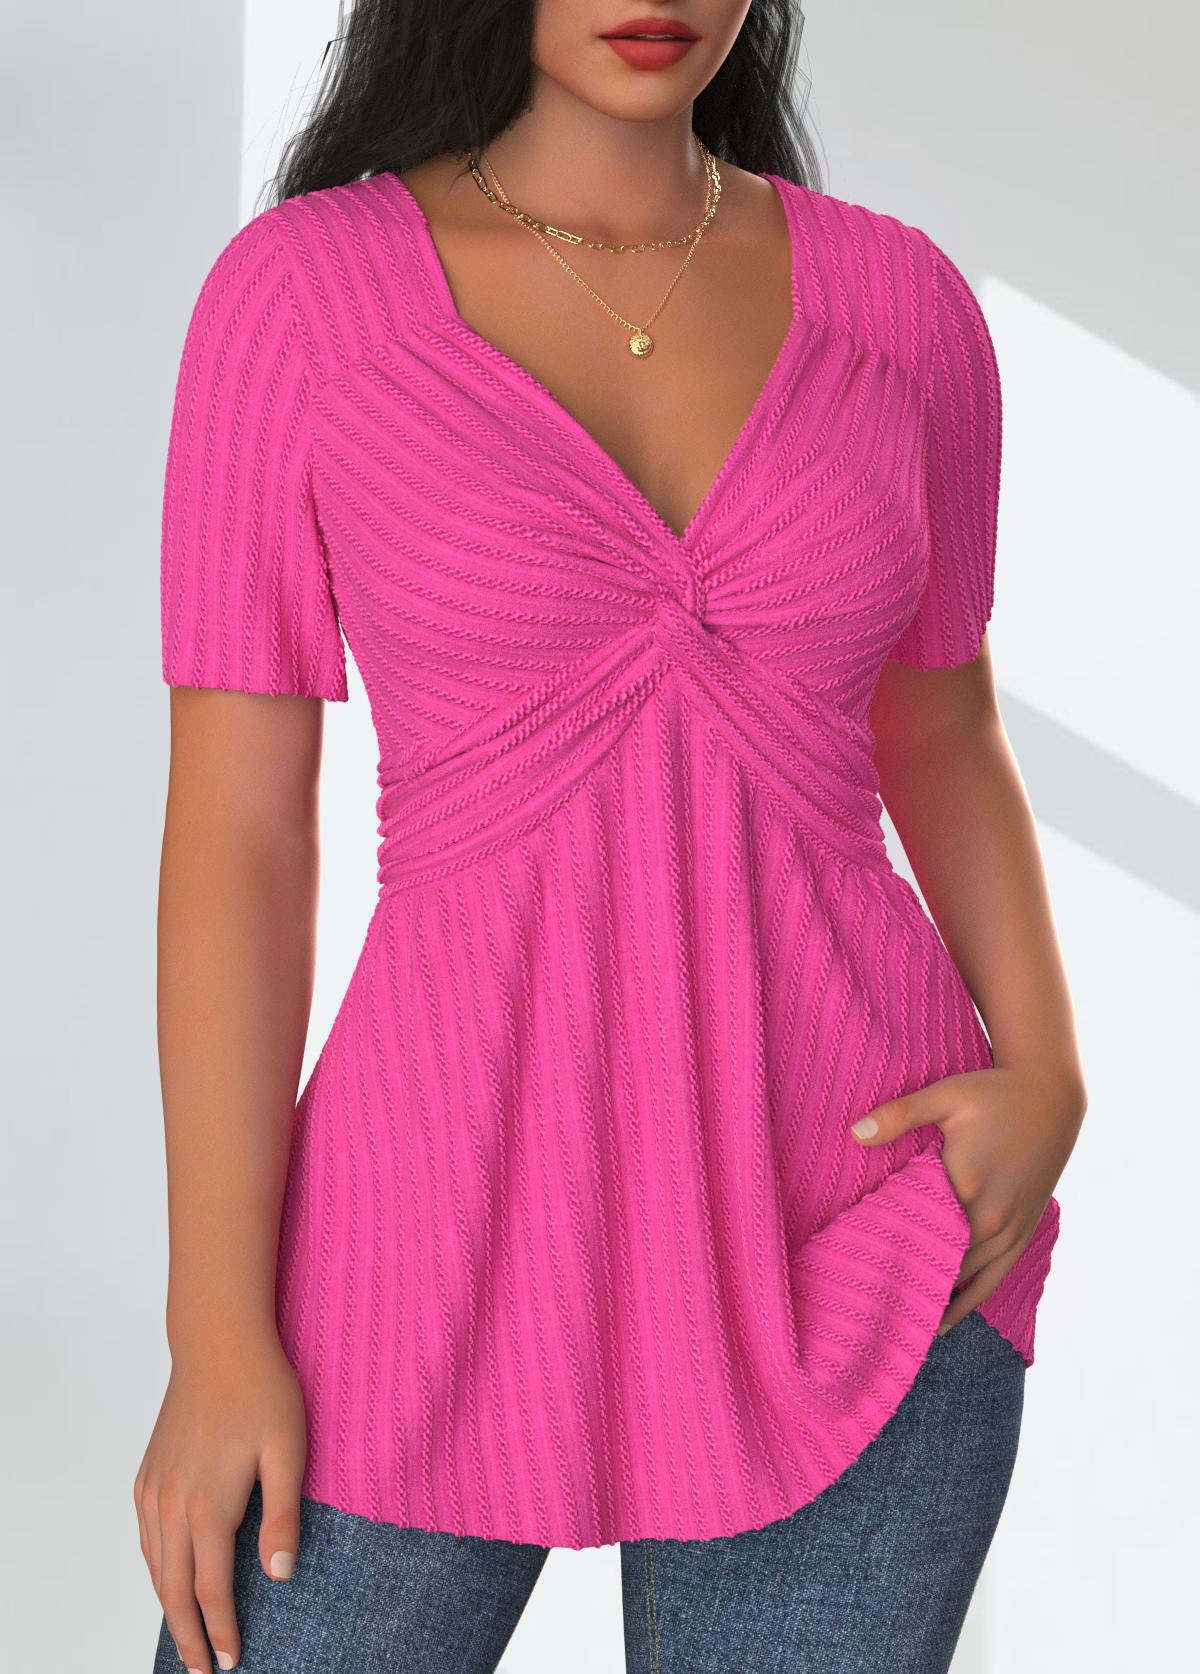 Textured Fabric Hot Pink Short Sleeve T Shirt